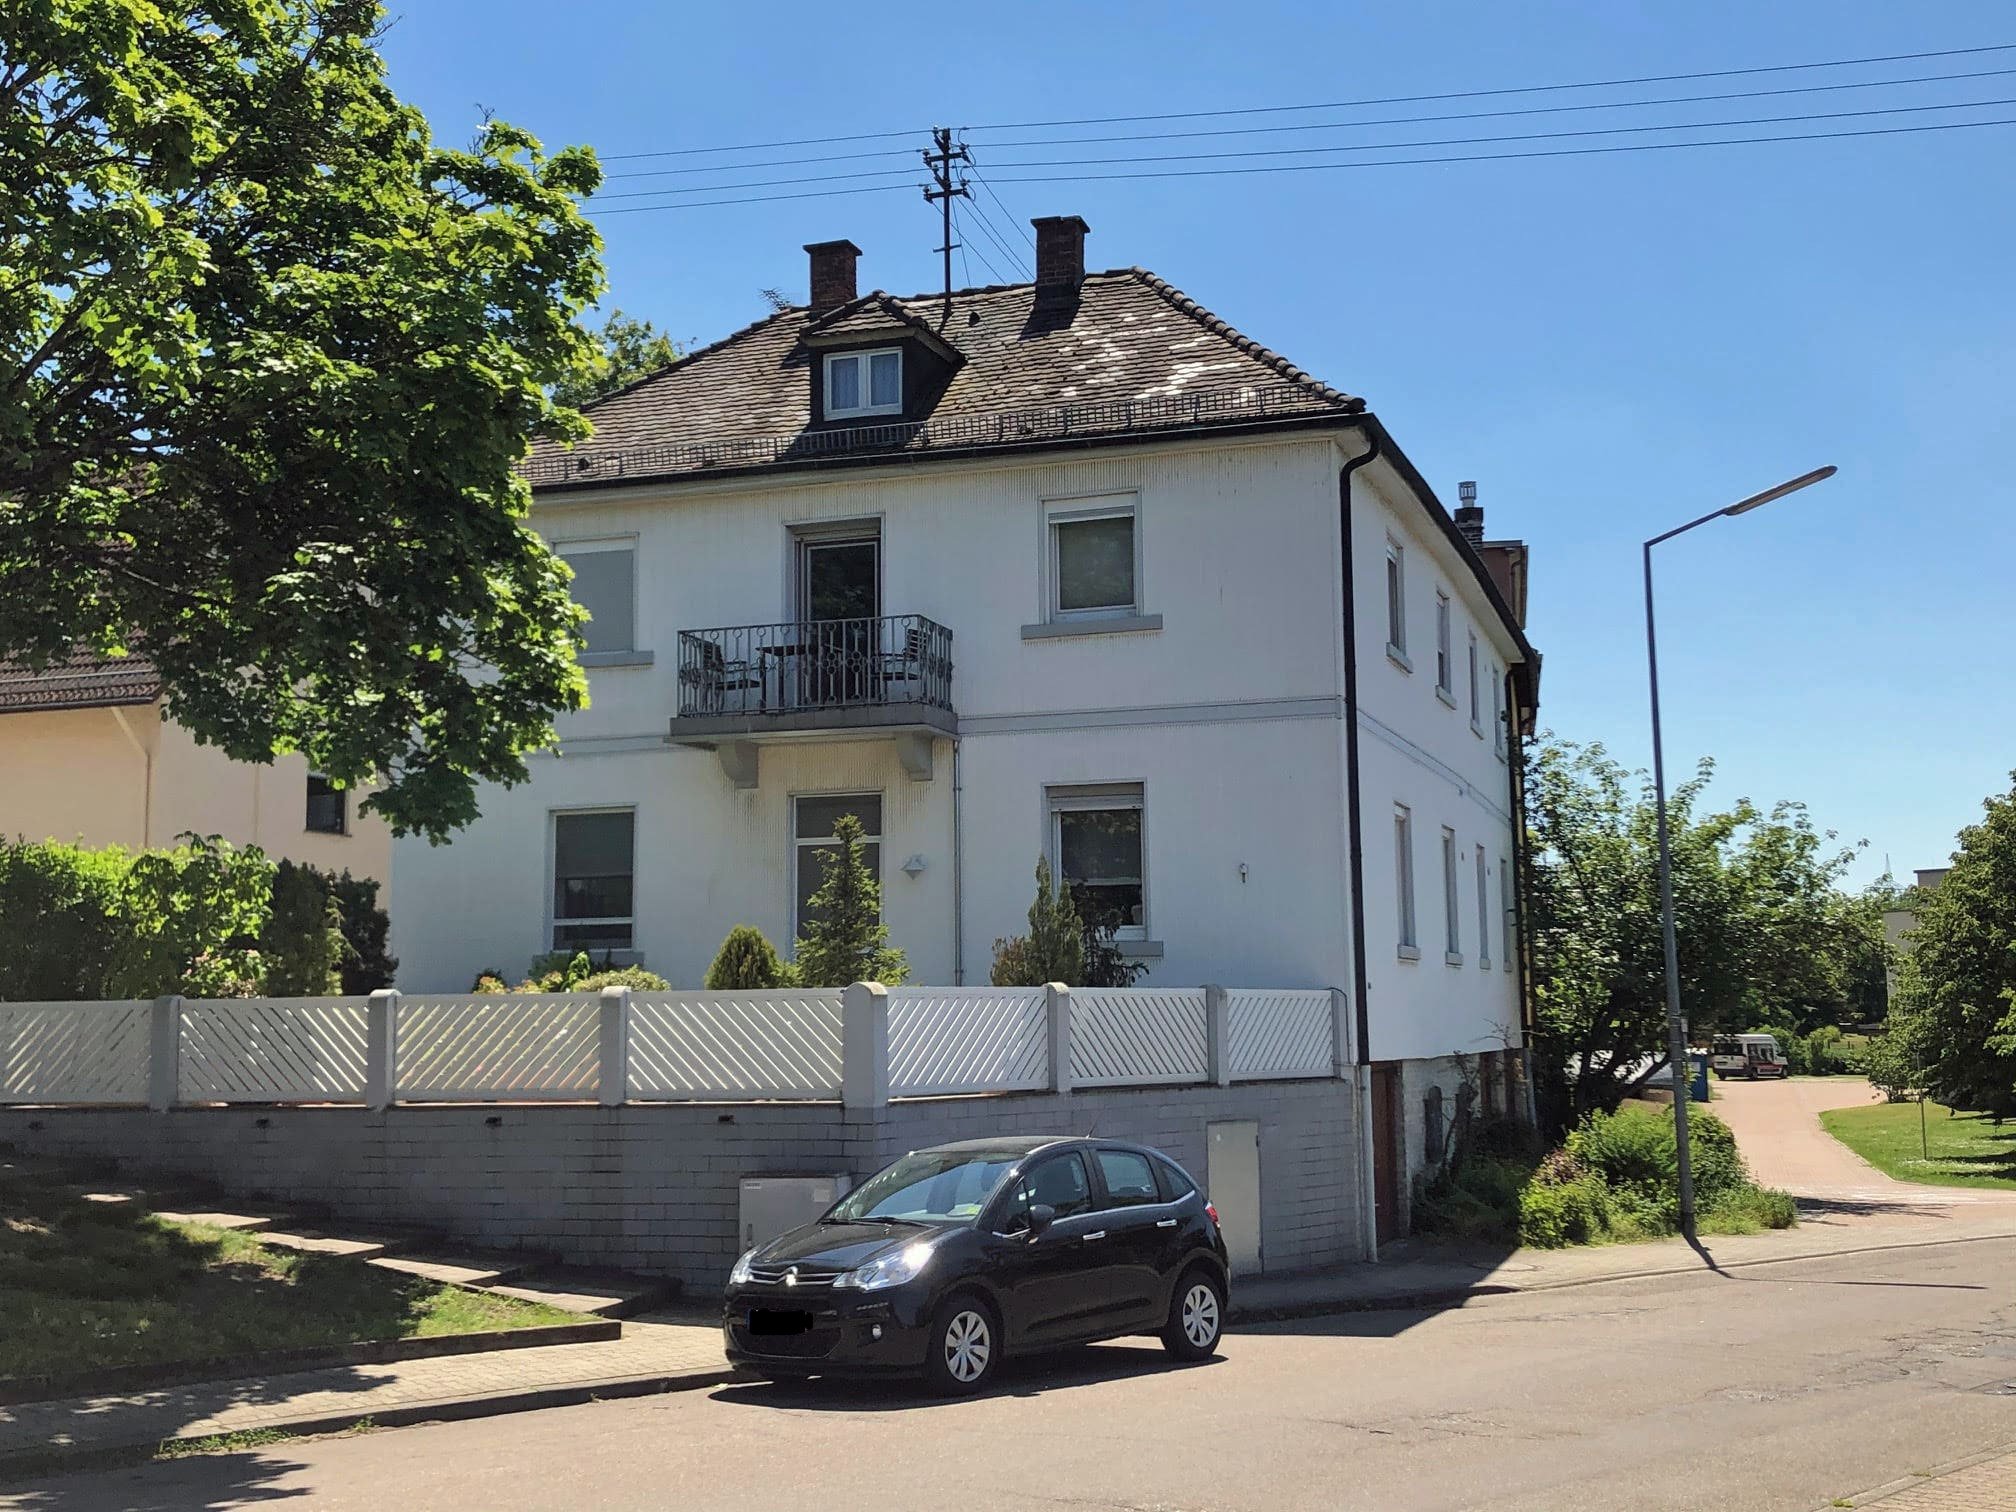 3-Familienhaus in ruhiger Lage in Karlsruhe-Daxlanden.jpg